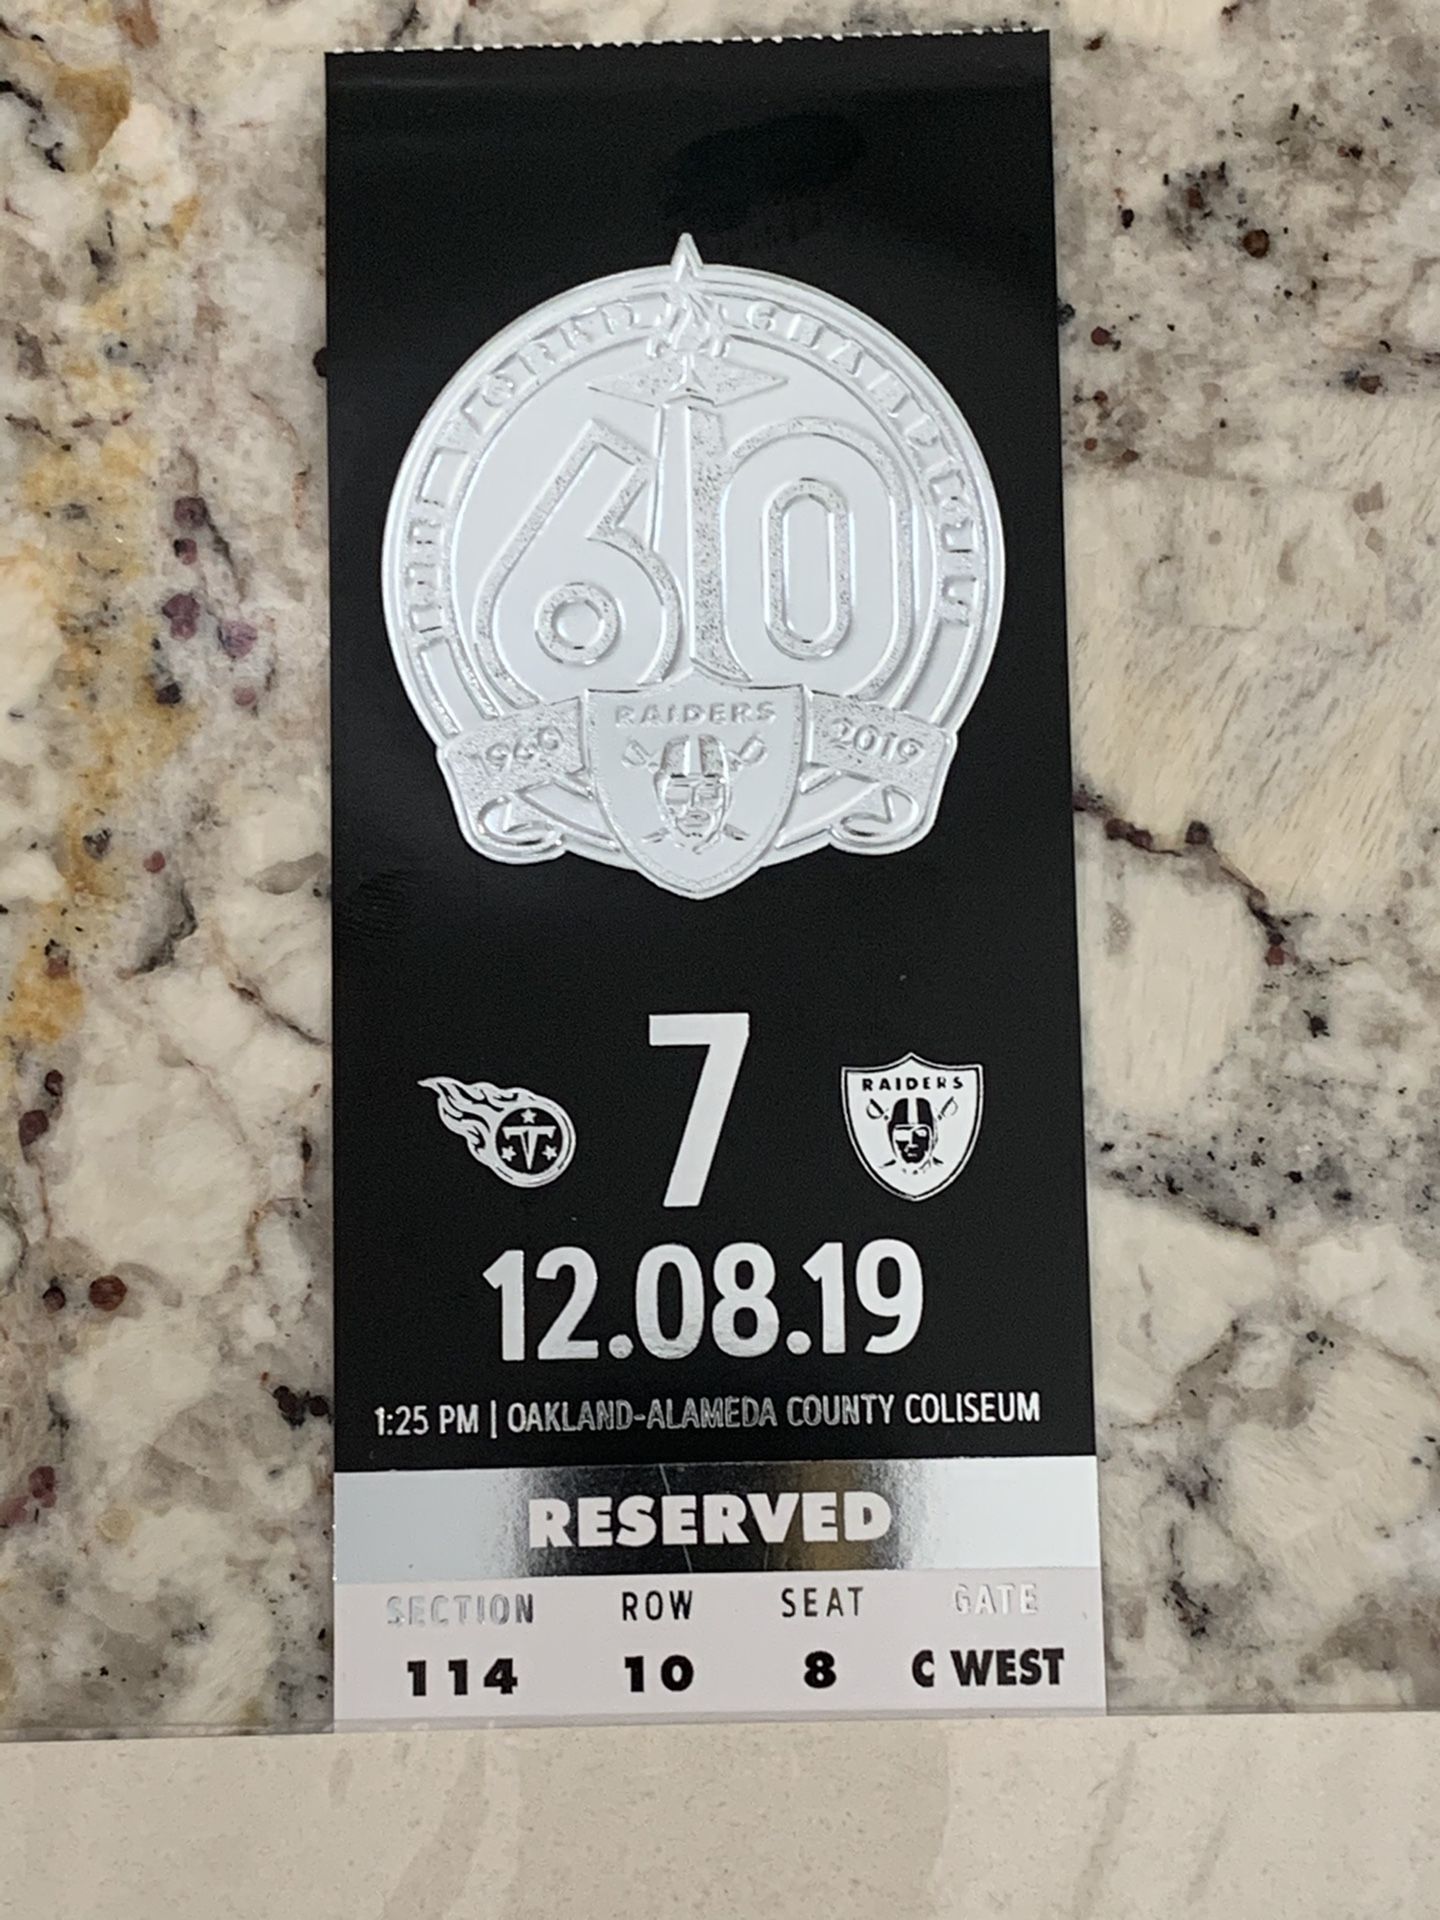 Raiders ticket